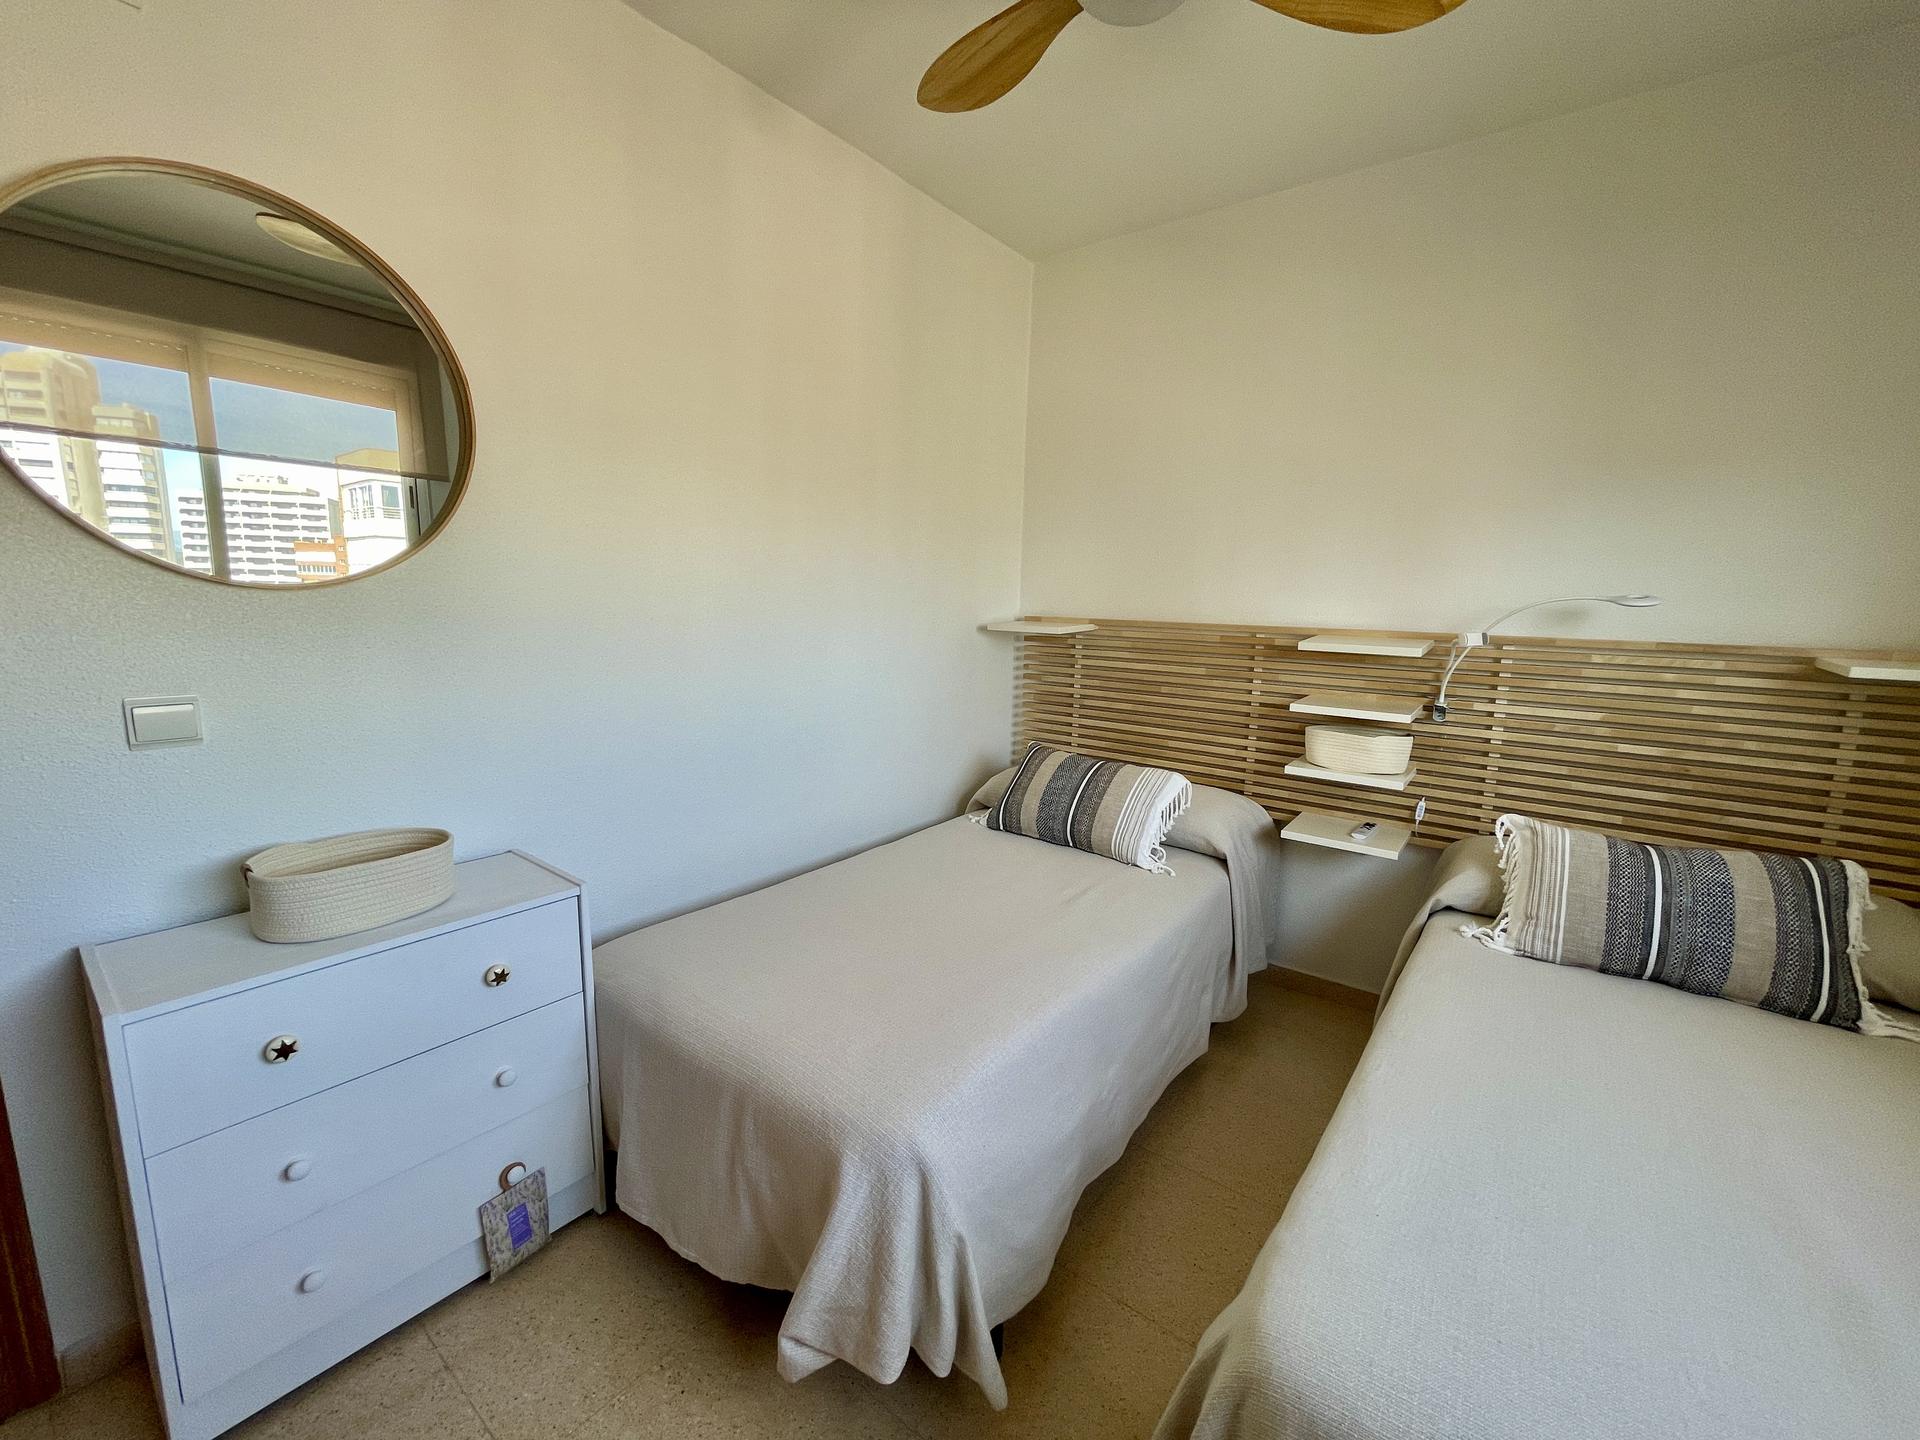 Apartamento reformado con camas individuales